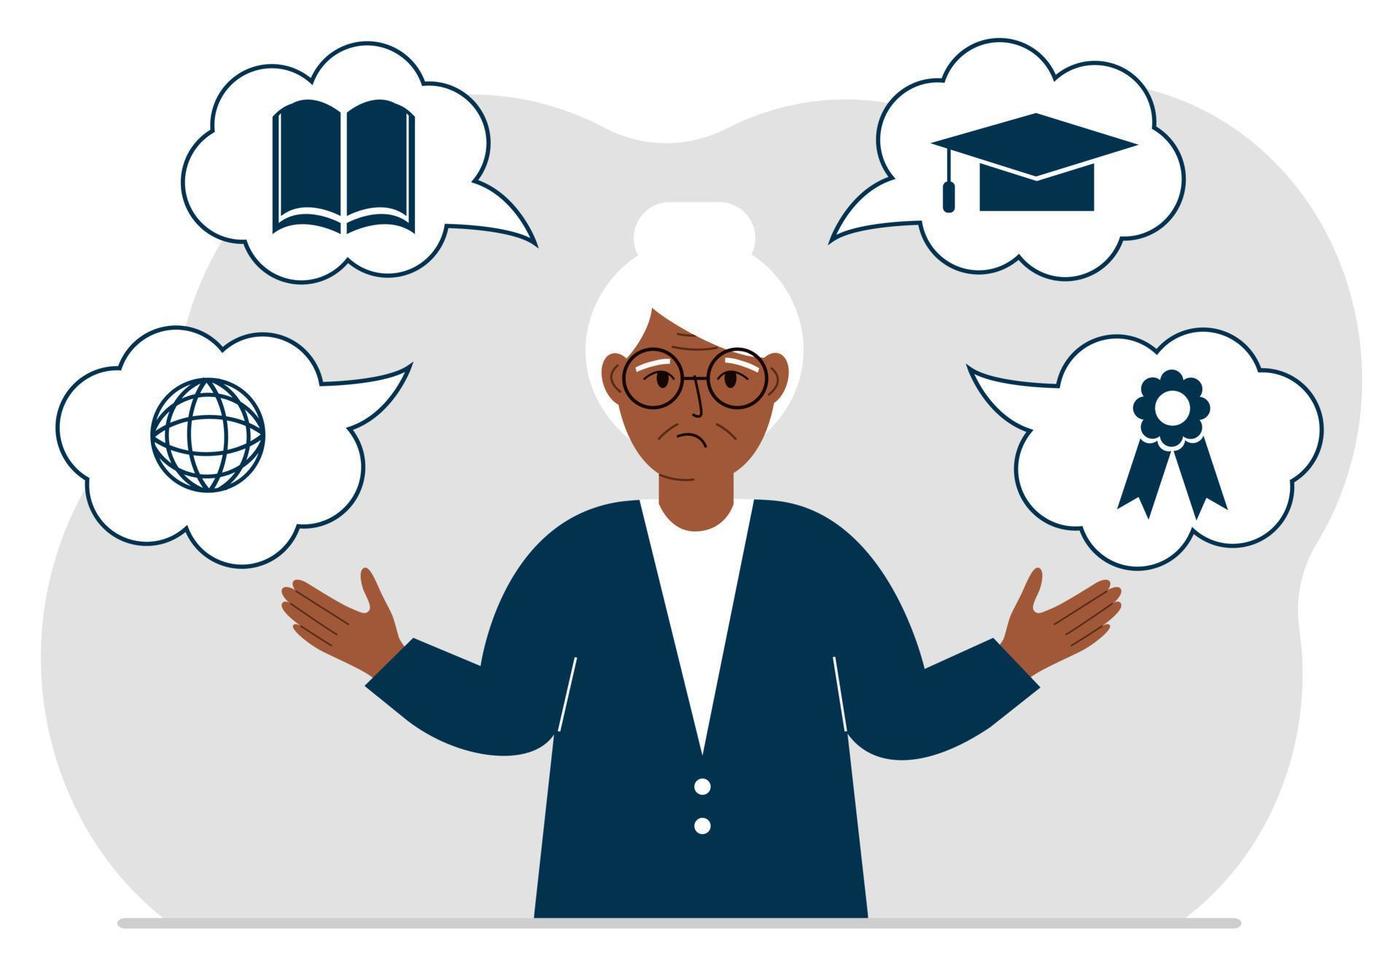 ledsen mormor med tankar om lärande. internetyrke, högre utbildning, börs, finansiell kunskap. olika ikoner om utbildning. platt vektor illustration